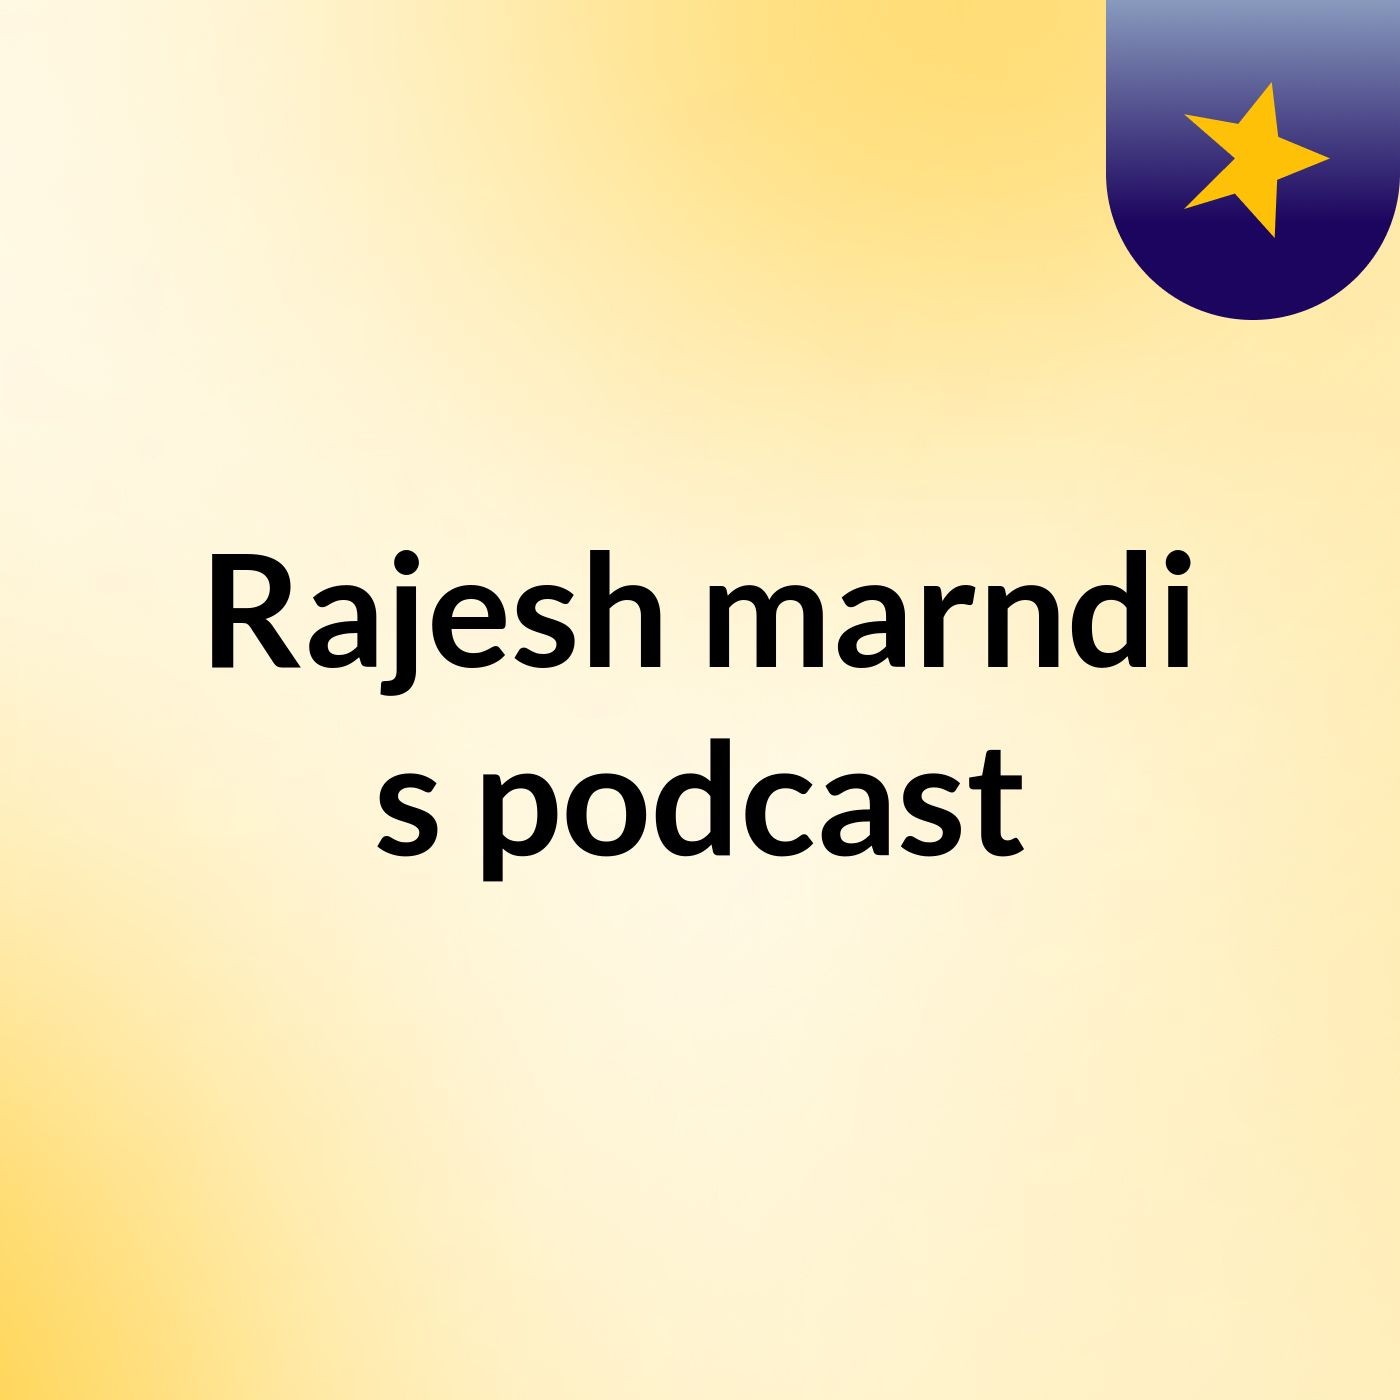 Rajesh marndi's podcast